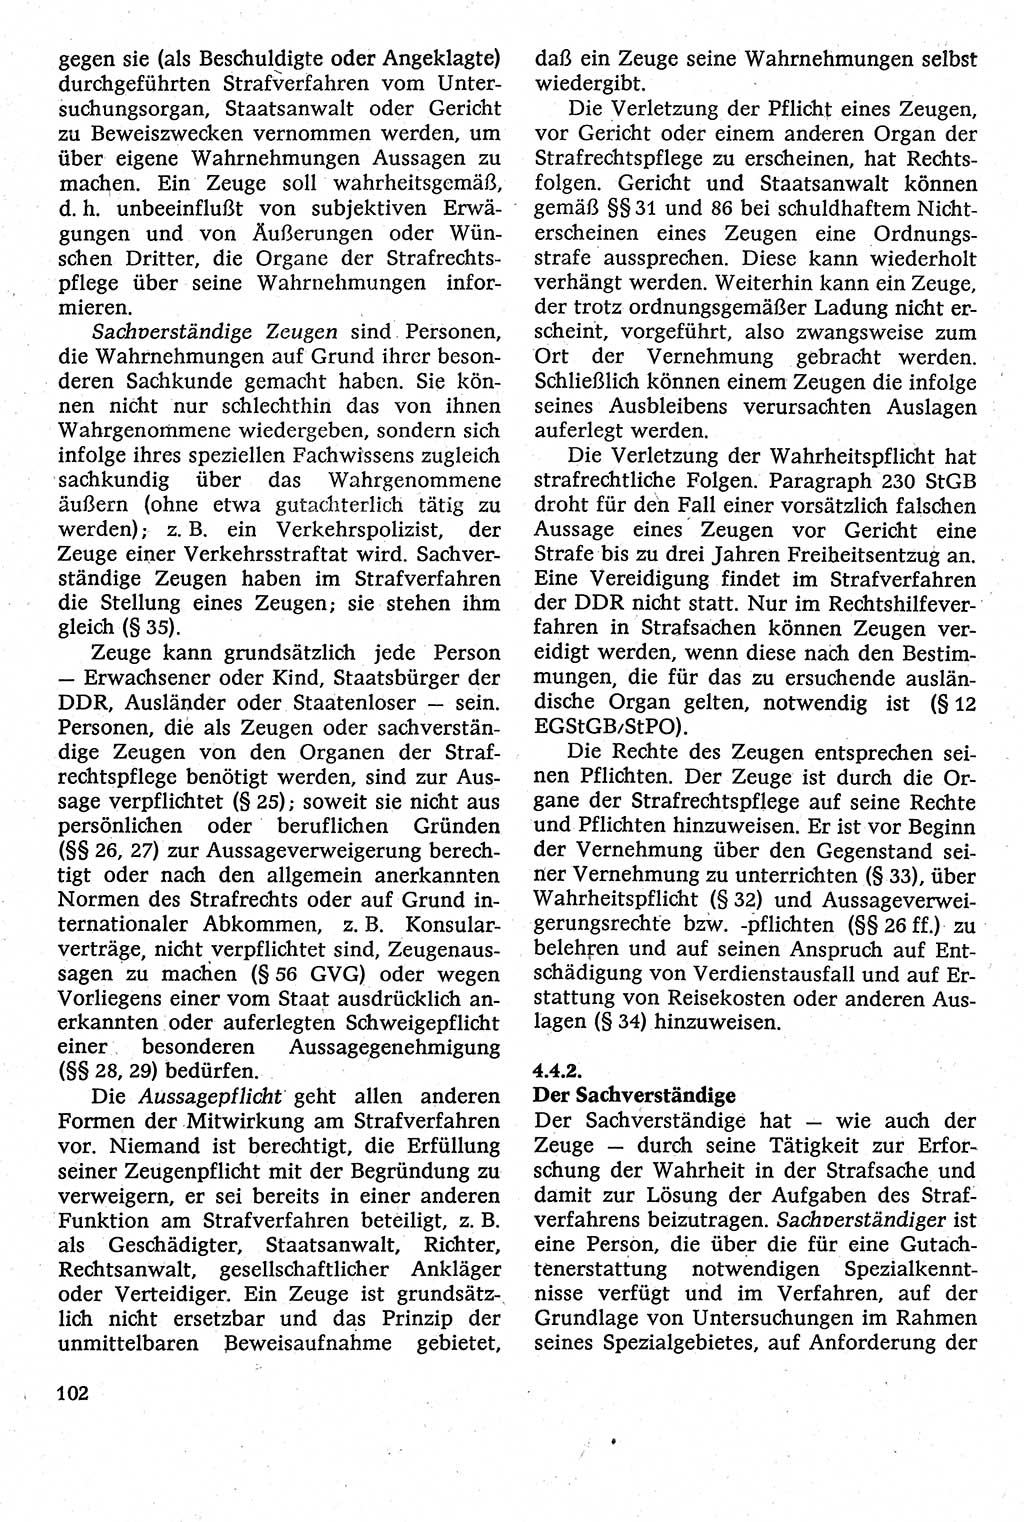 Strafverfahrensrecht [Deutsche Demokratische Republik (DDR)], Lehrbuch 1982, Seite 102 (Strafverf.-R. DDR Lb. 1982, S. 102)